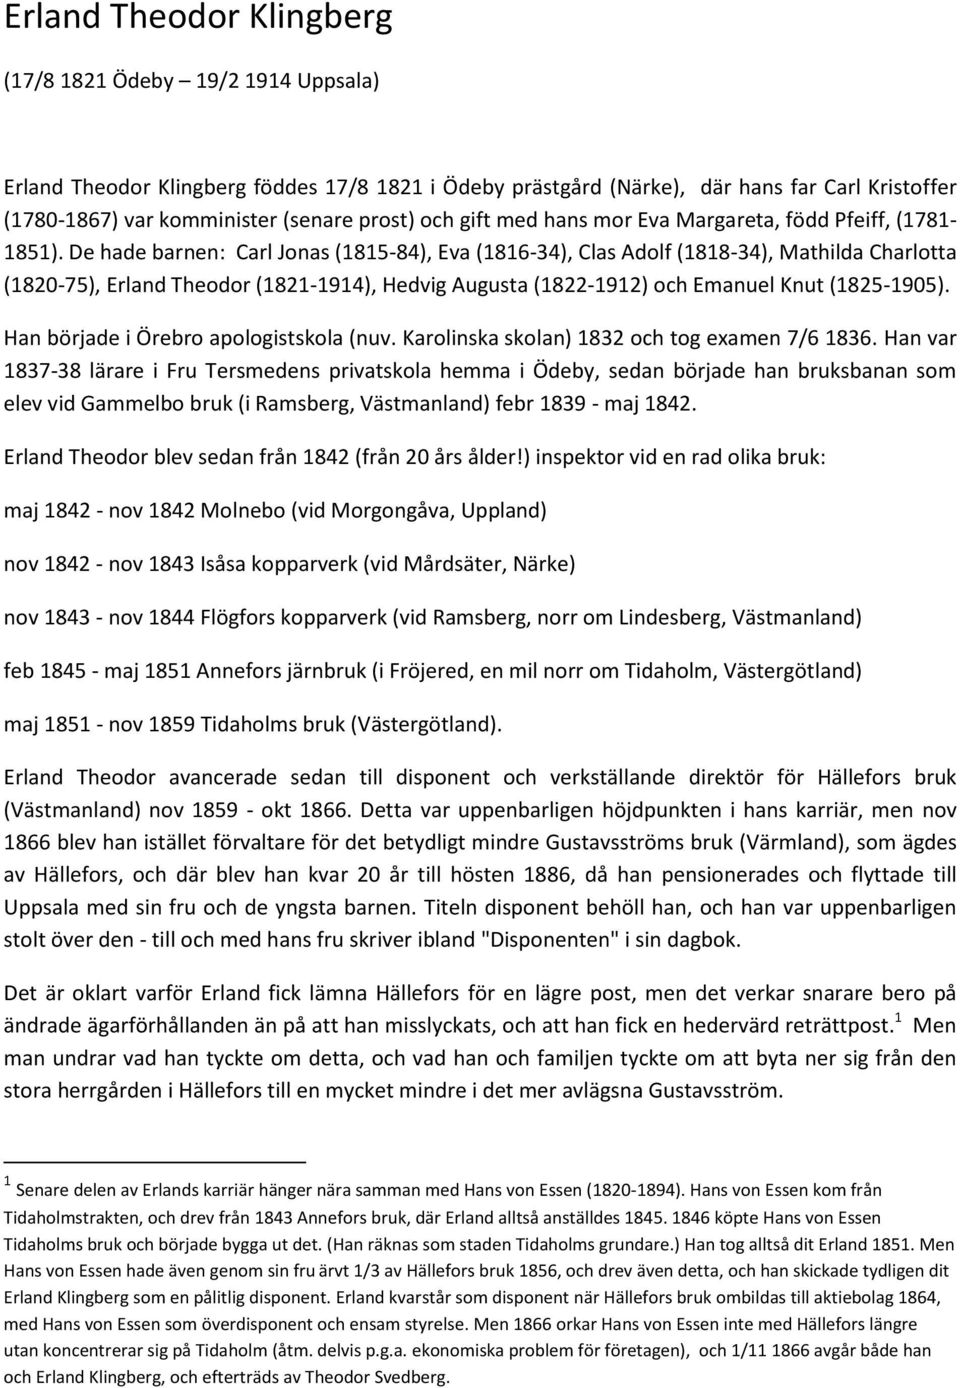 De hade barnen: Carl Jonas (1815-84), Eva (1816-34), Clas Adolf (1818-34), Mathilda Charlotta (1820-75), Erland Theodor (1821-1914), Hedvig Augusta (1822-1912) och Emanuel Knut (1825-1905).